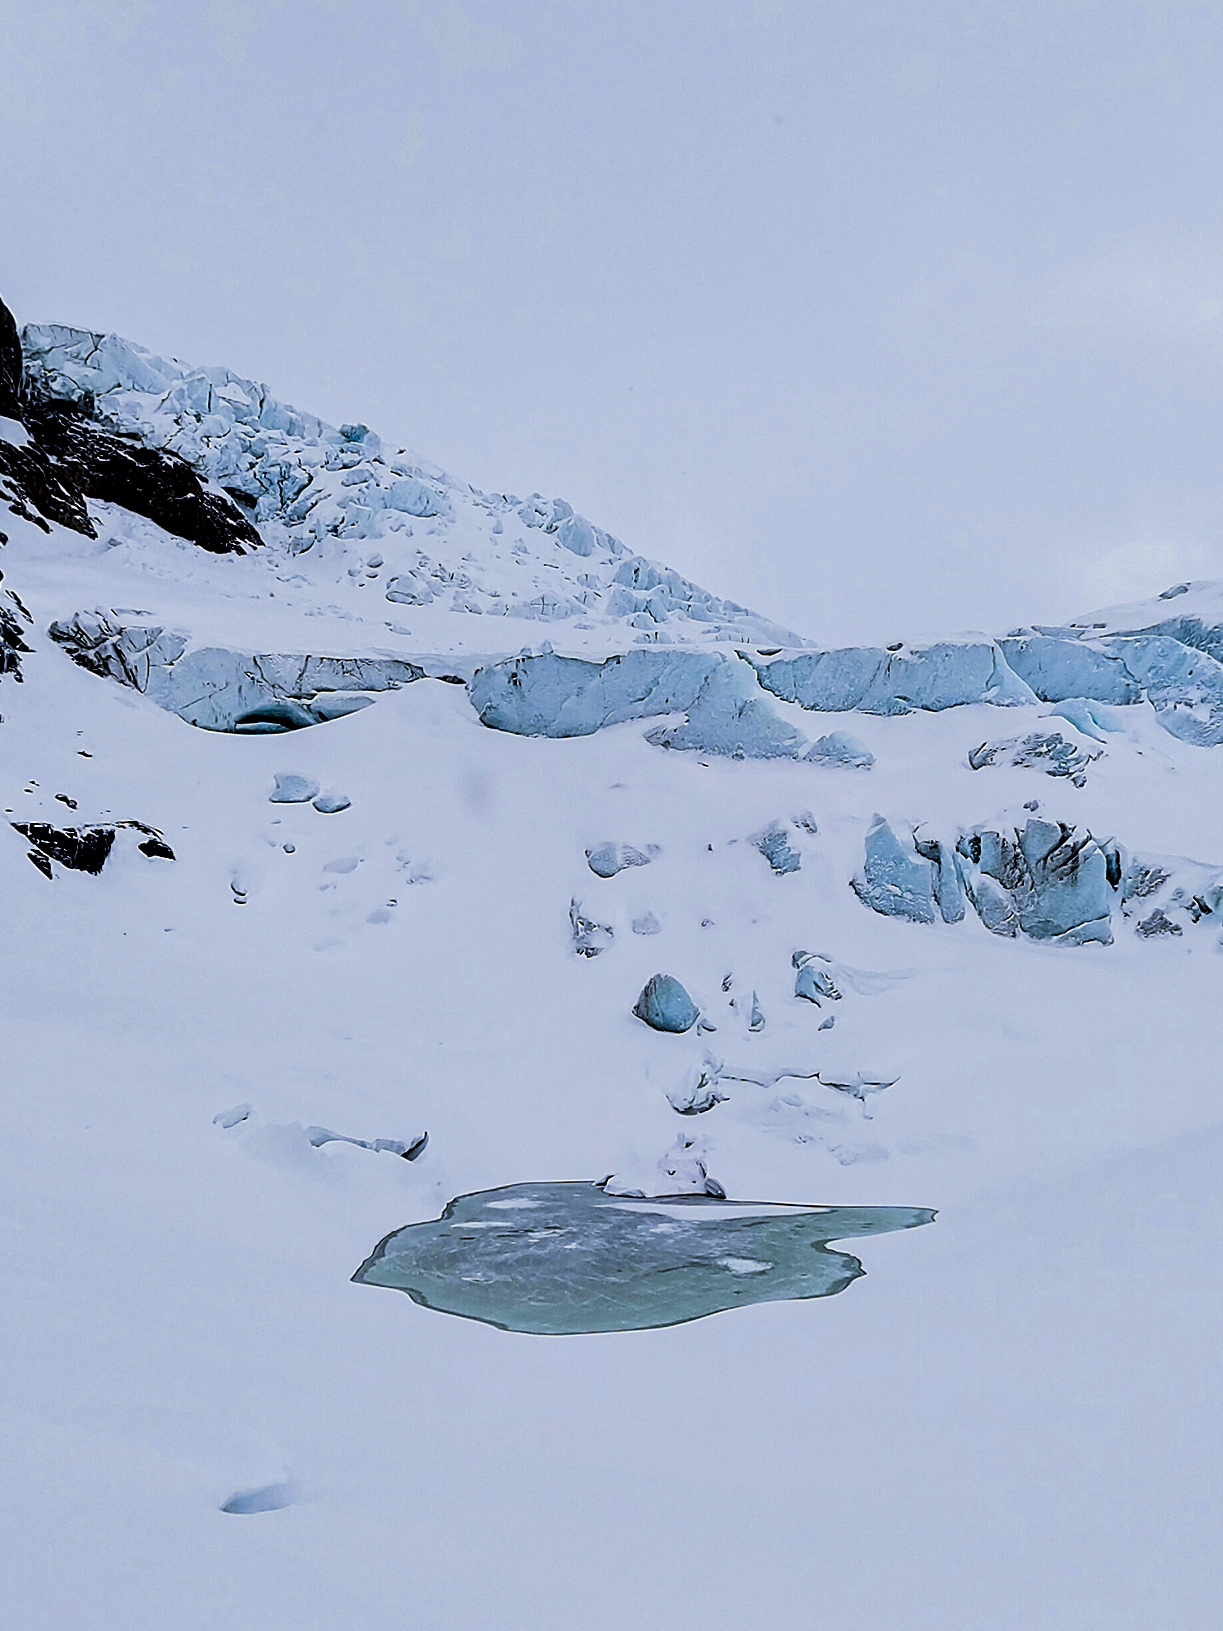 Glacial lake in winter